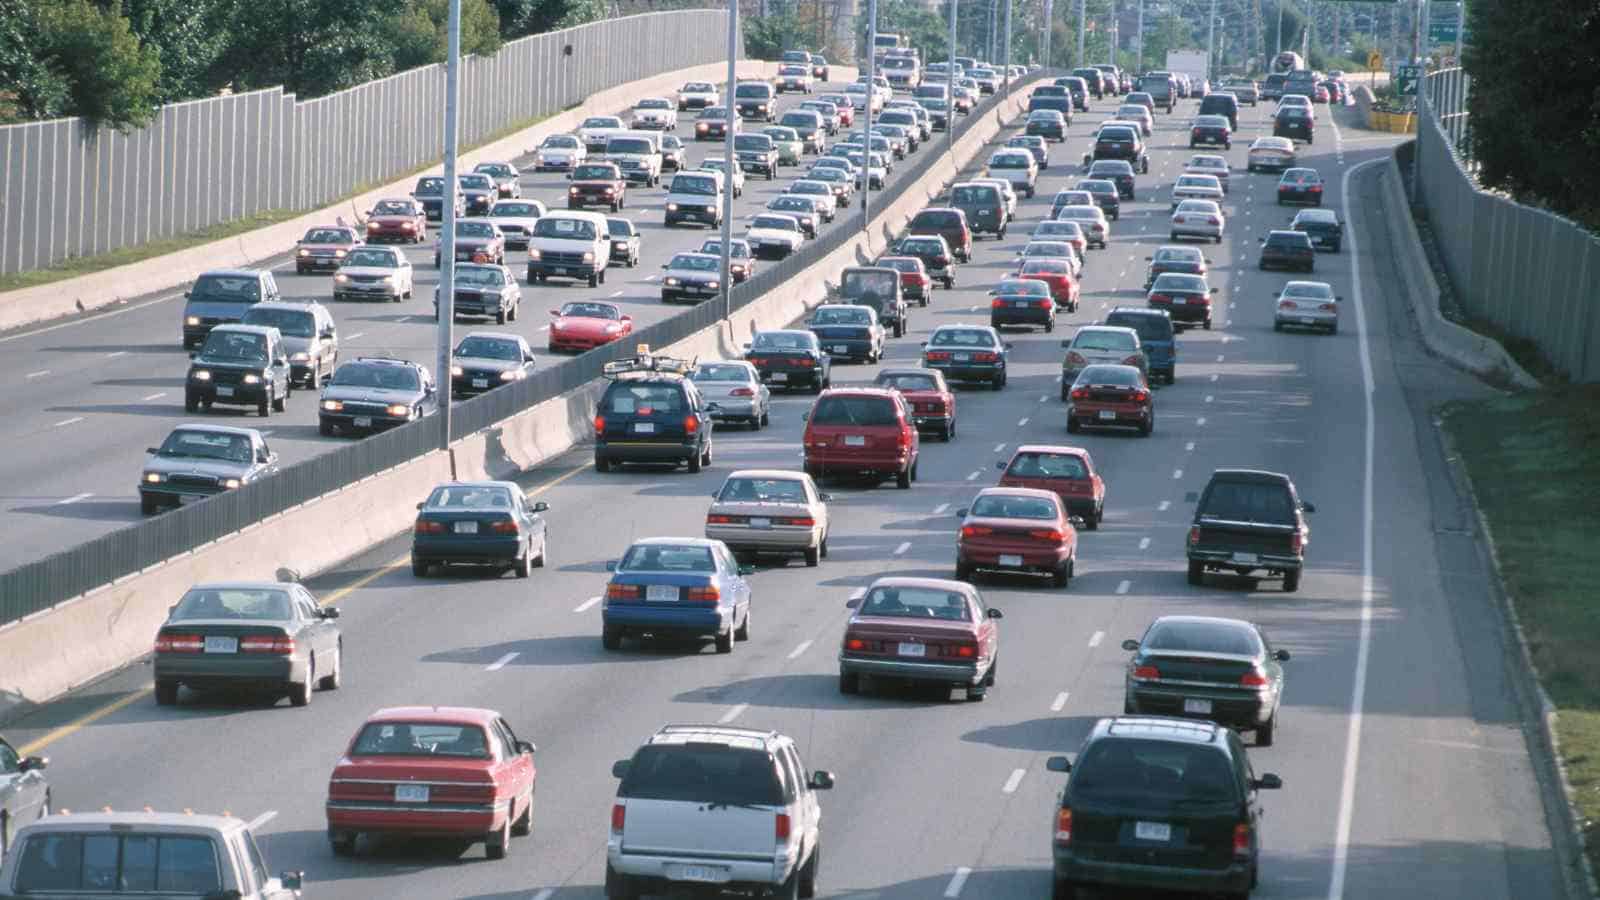 La nuova società Autostrade dello Stato si occuperà delle autostrade con pedaggi a pagamento